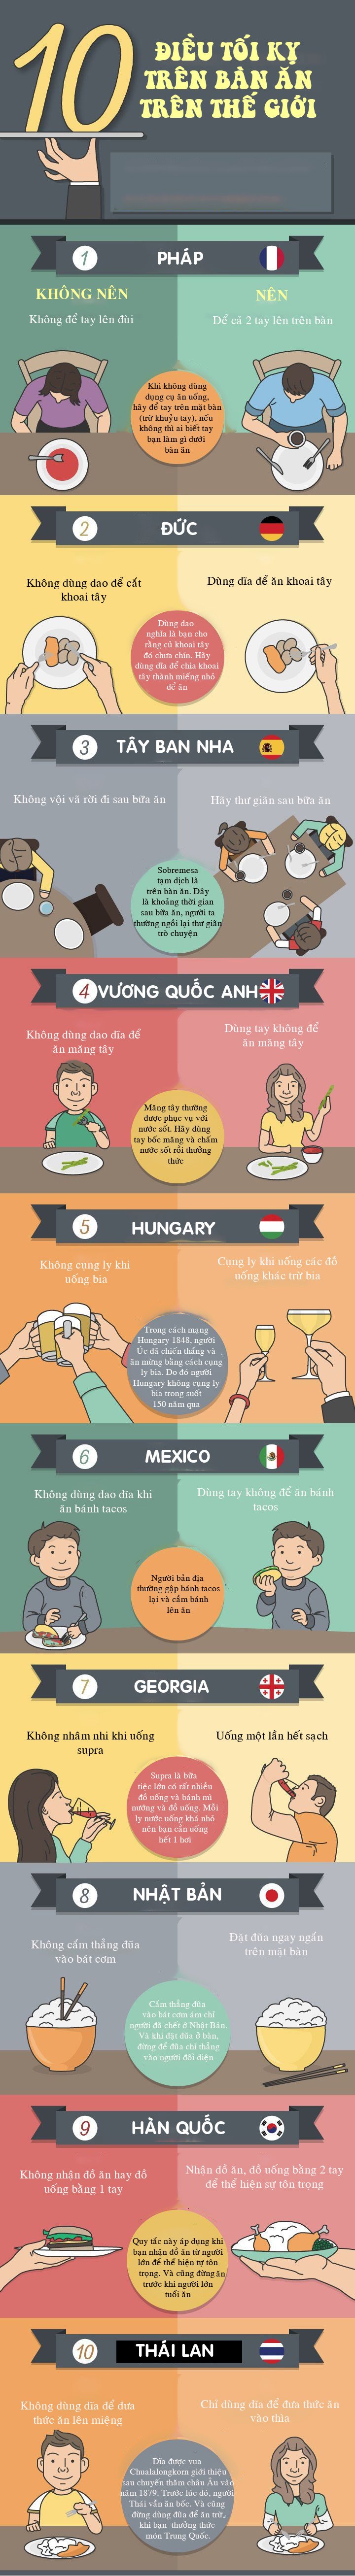 10 điều cấm kỵ đáng ngạc nhiên khi ăn uống tại các nước trên thế giới - 1